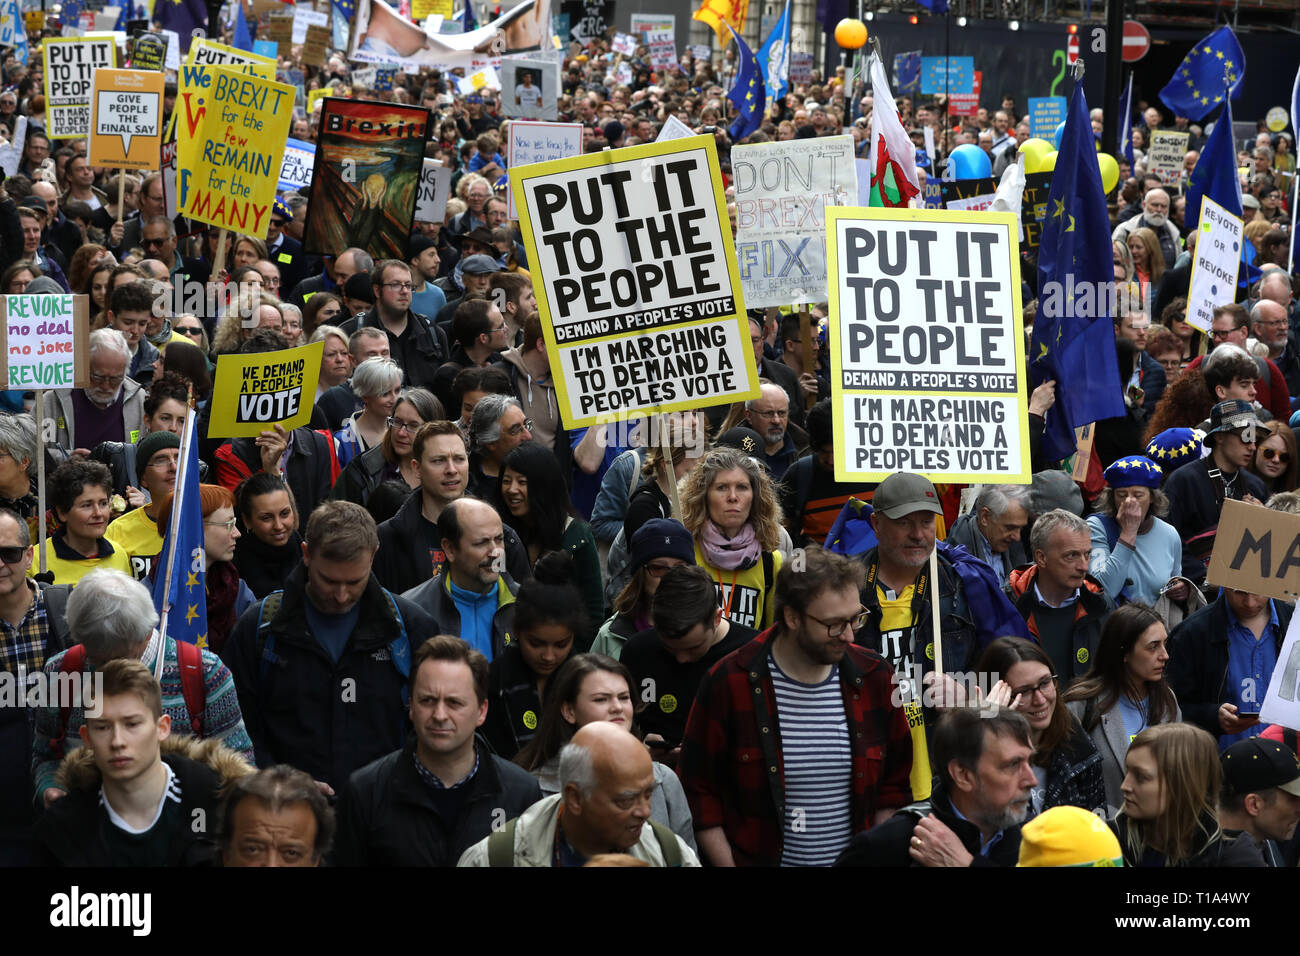 Des milliers de manifestants Anti-Brexit mars à Londres pour protester contre un vote du peuple sur l'issue de l'Brexit référendum, Londres, Angleterre, Royaume-Uni Banque D'Images